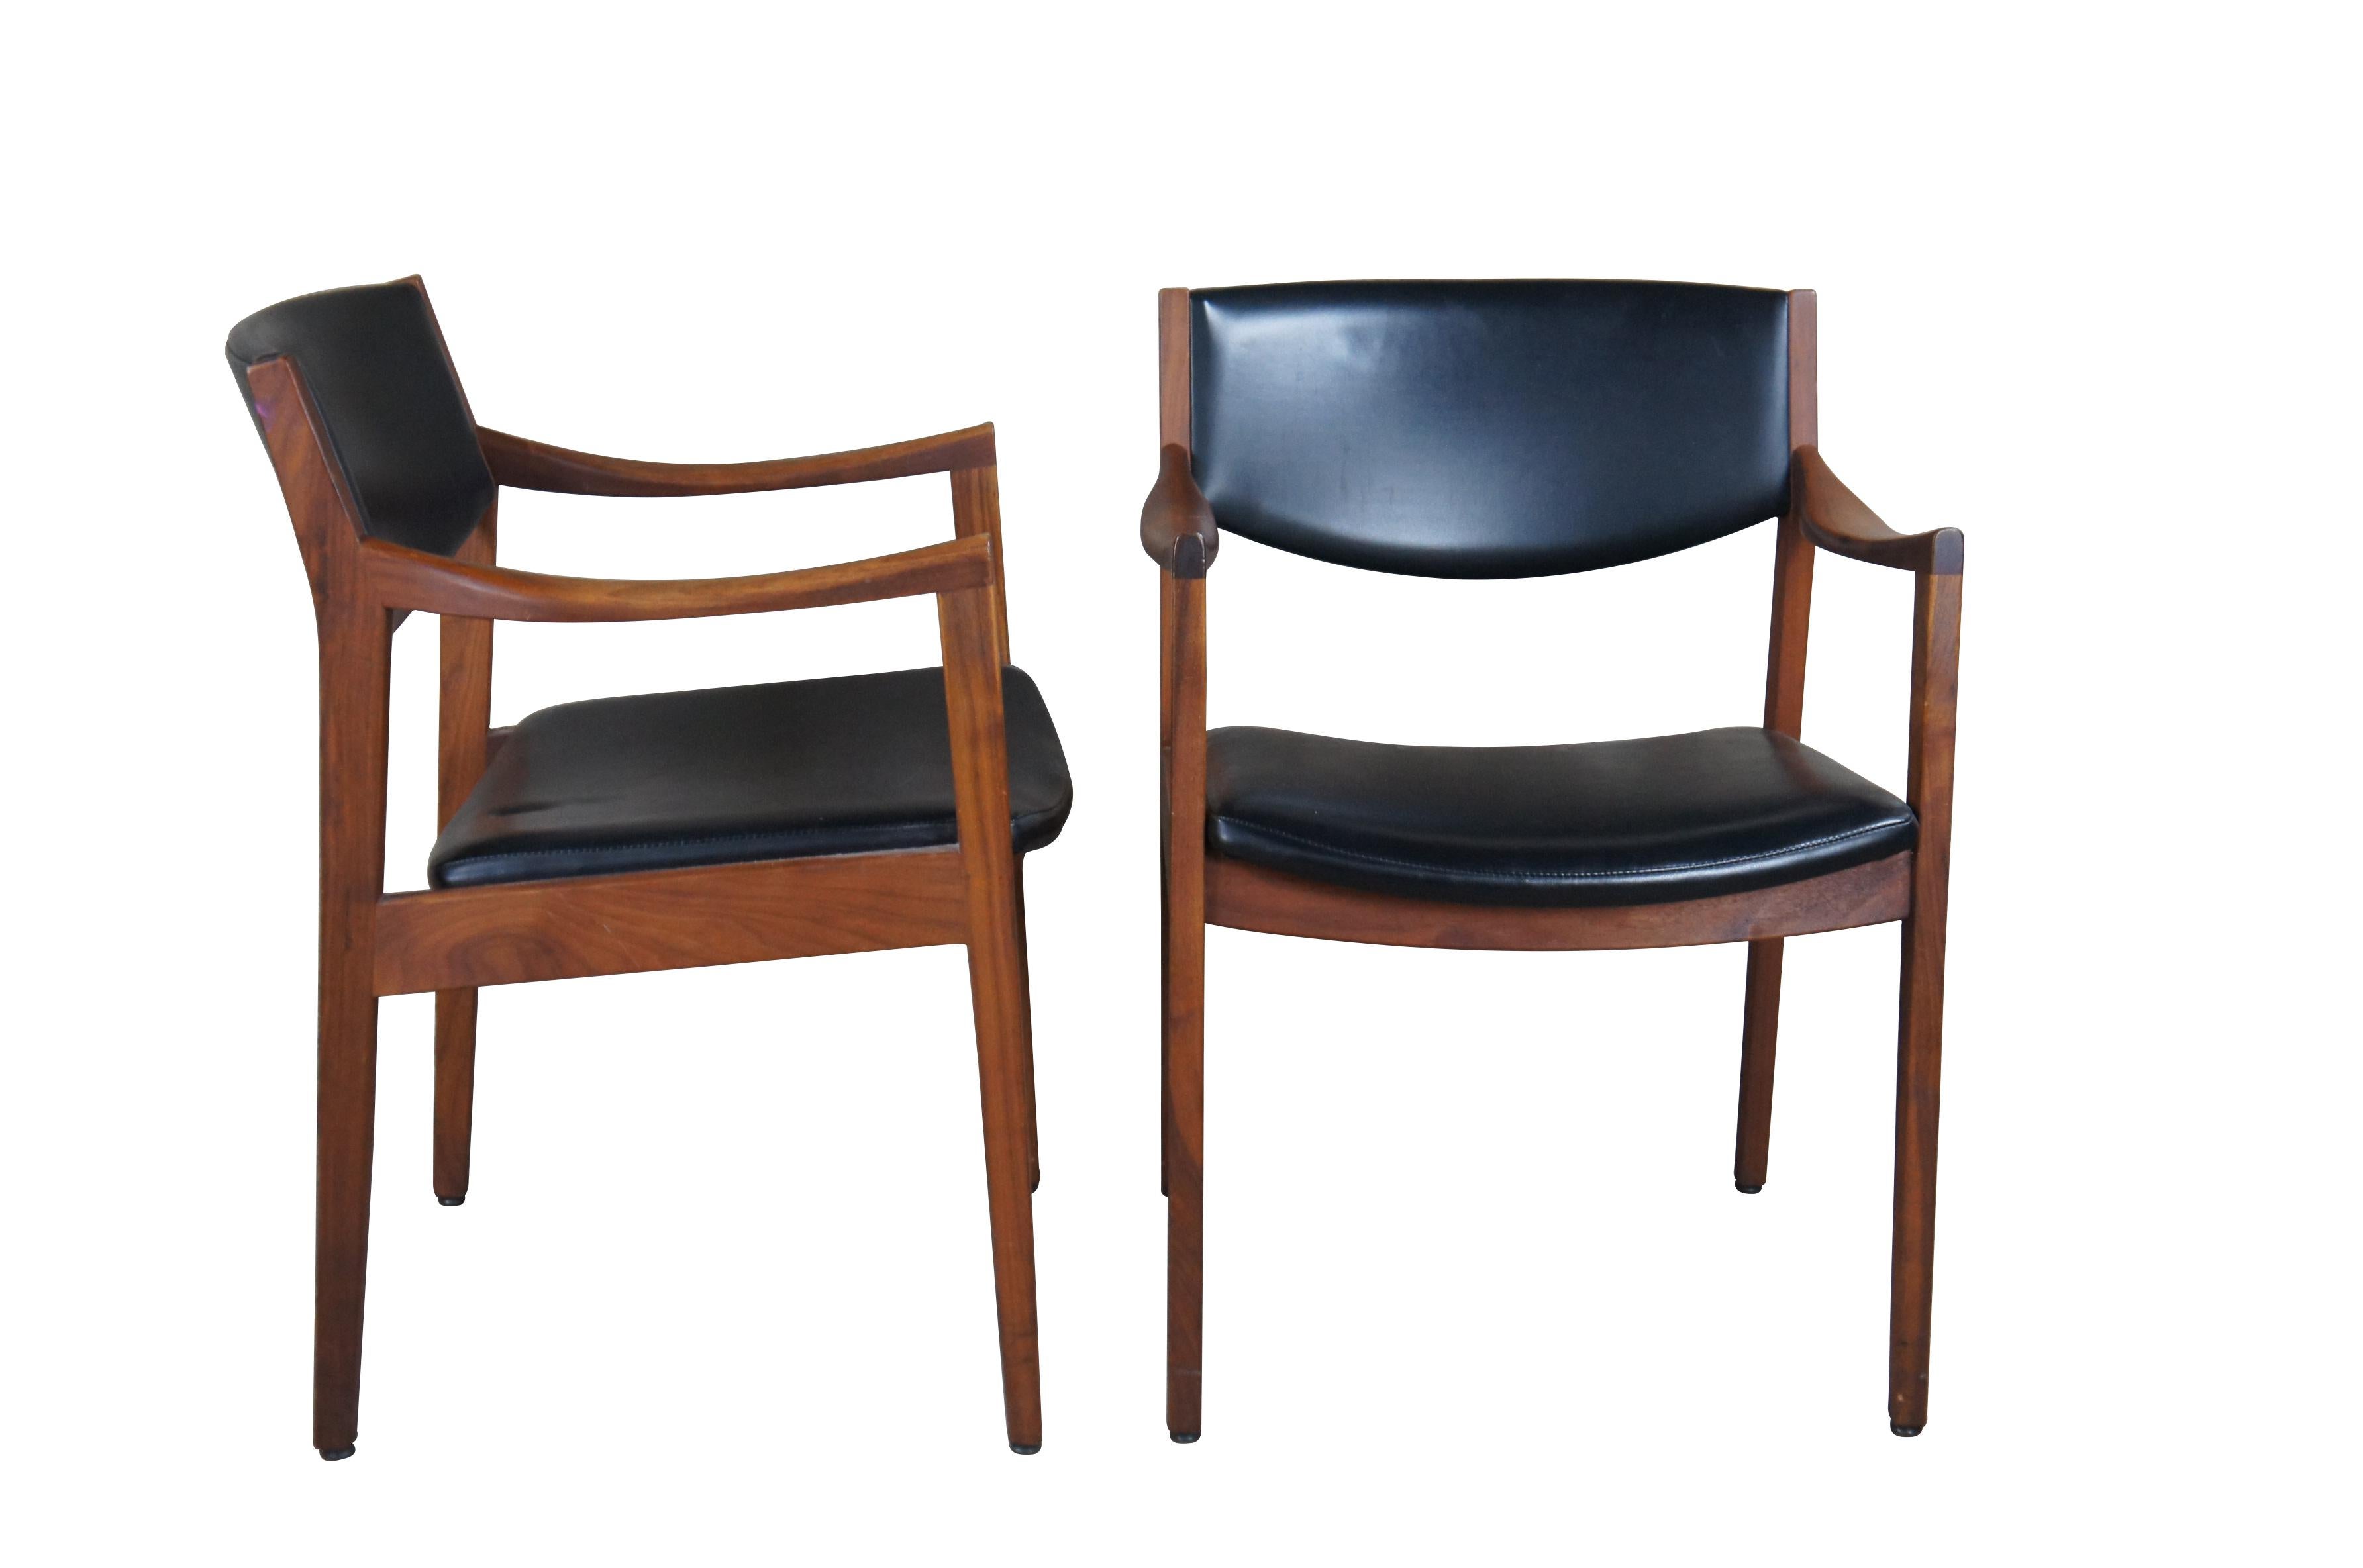 Paire de chaises à bras danoises de style Gunlocke Jens Risom, datant du milieu du siècle dernier.  Fabriqué en noyer avec assise et dossier en cuir noir.  

L'histoire de la société Gunlocke à Wayland, dans l'État de New York, commence en 1902,